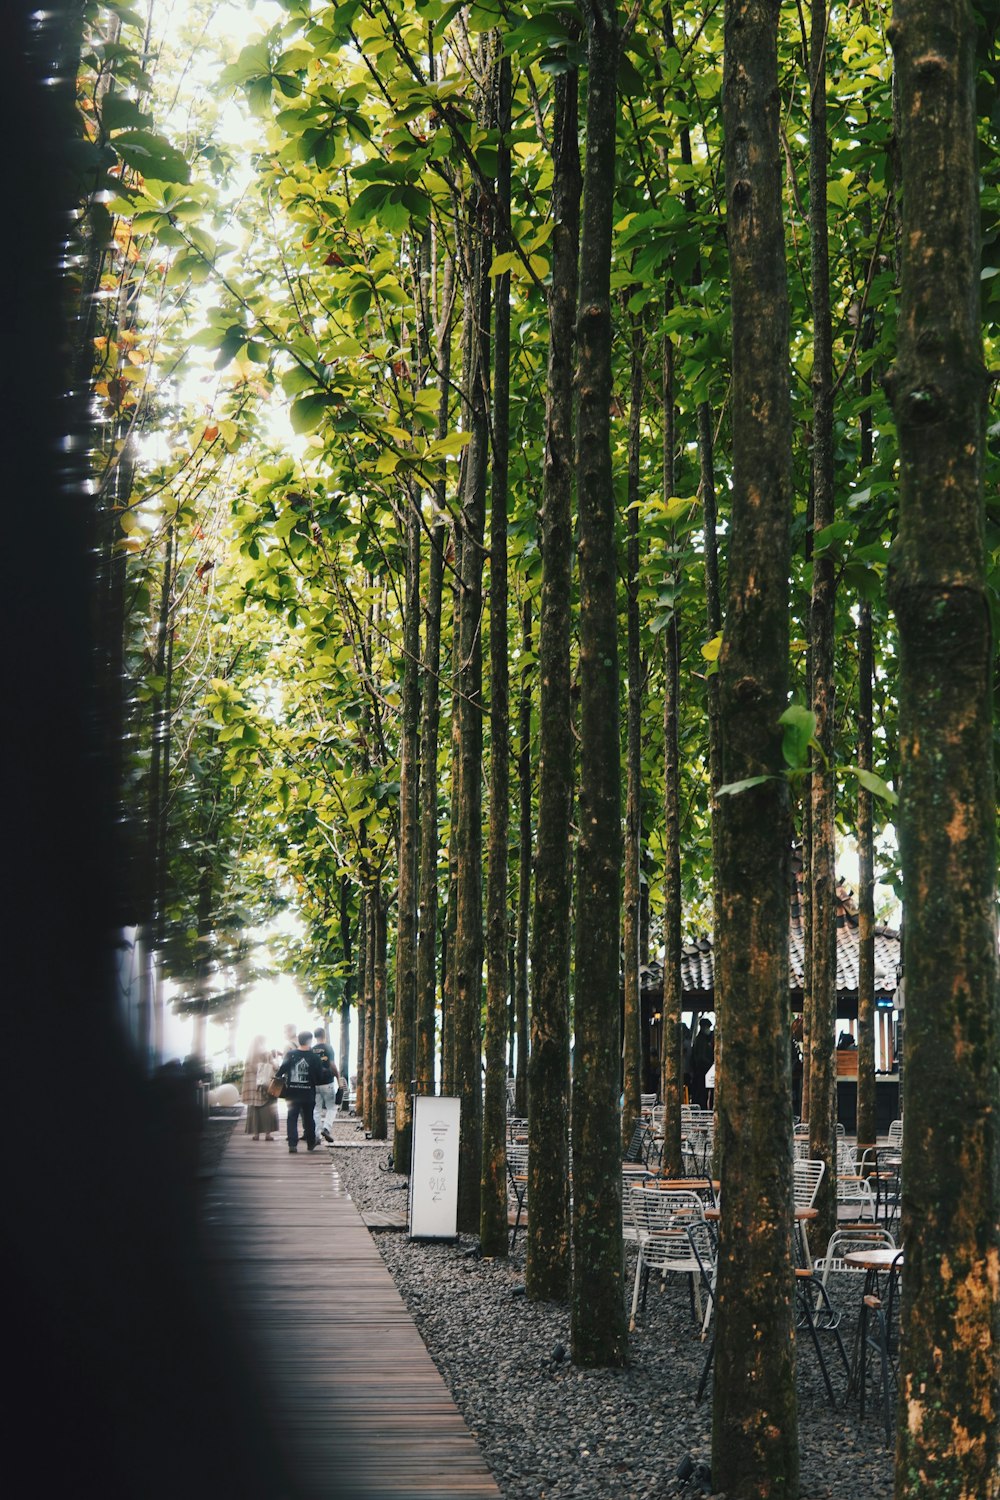 Un grupo de personas caminando por un bosque lleno de árboles